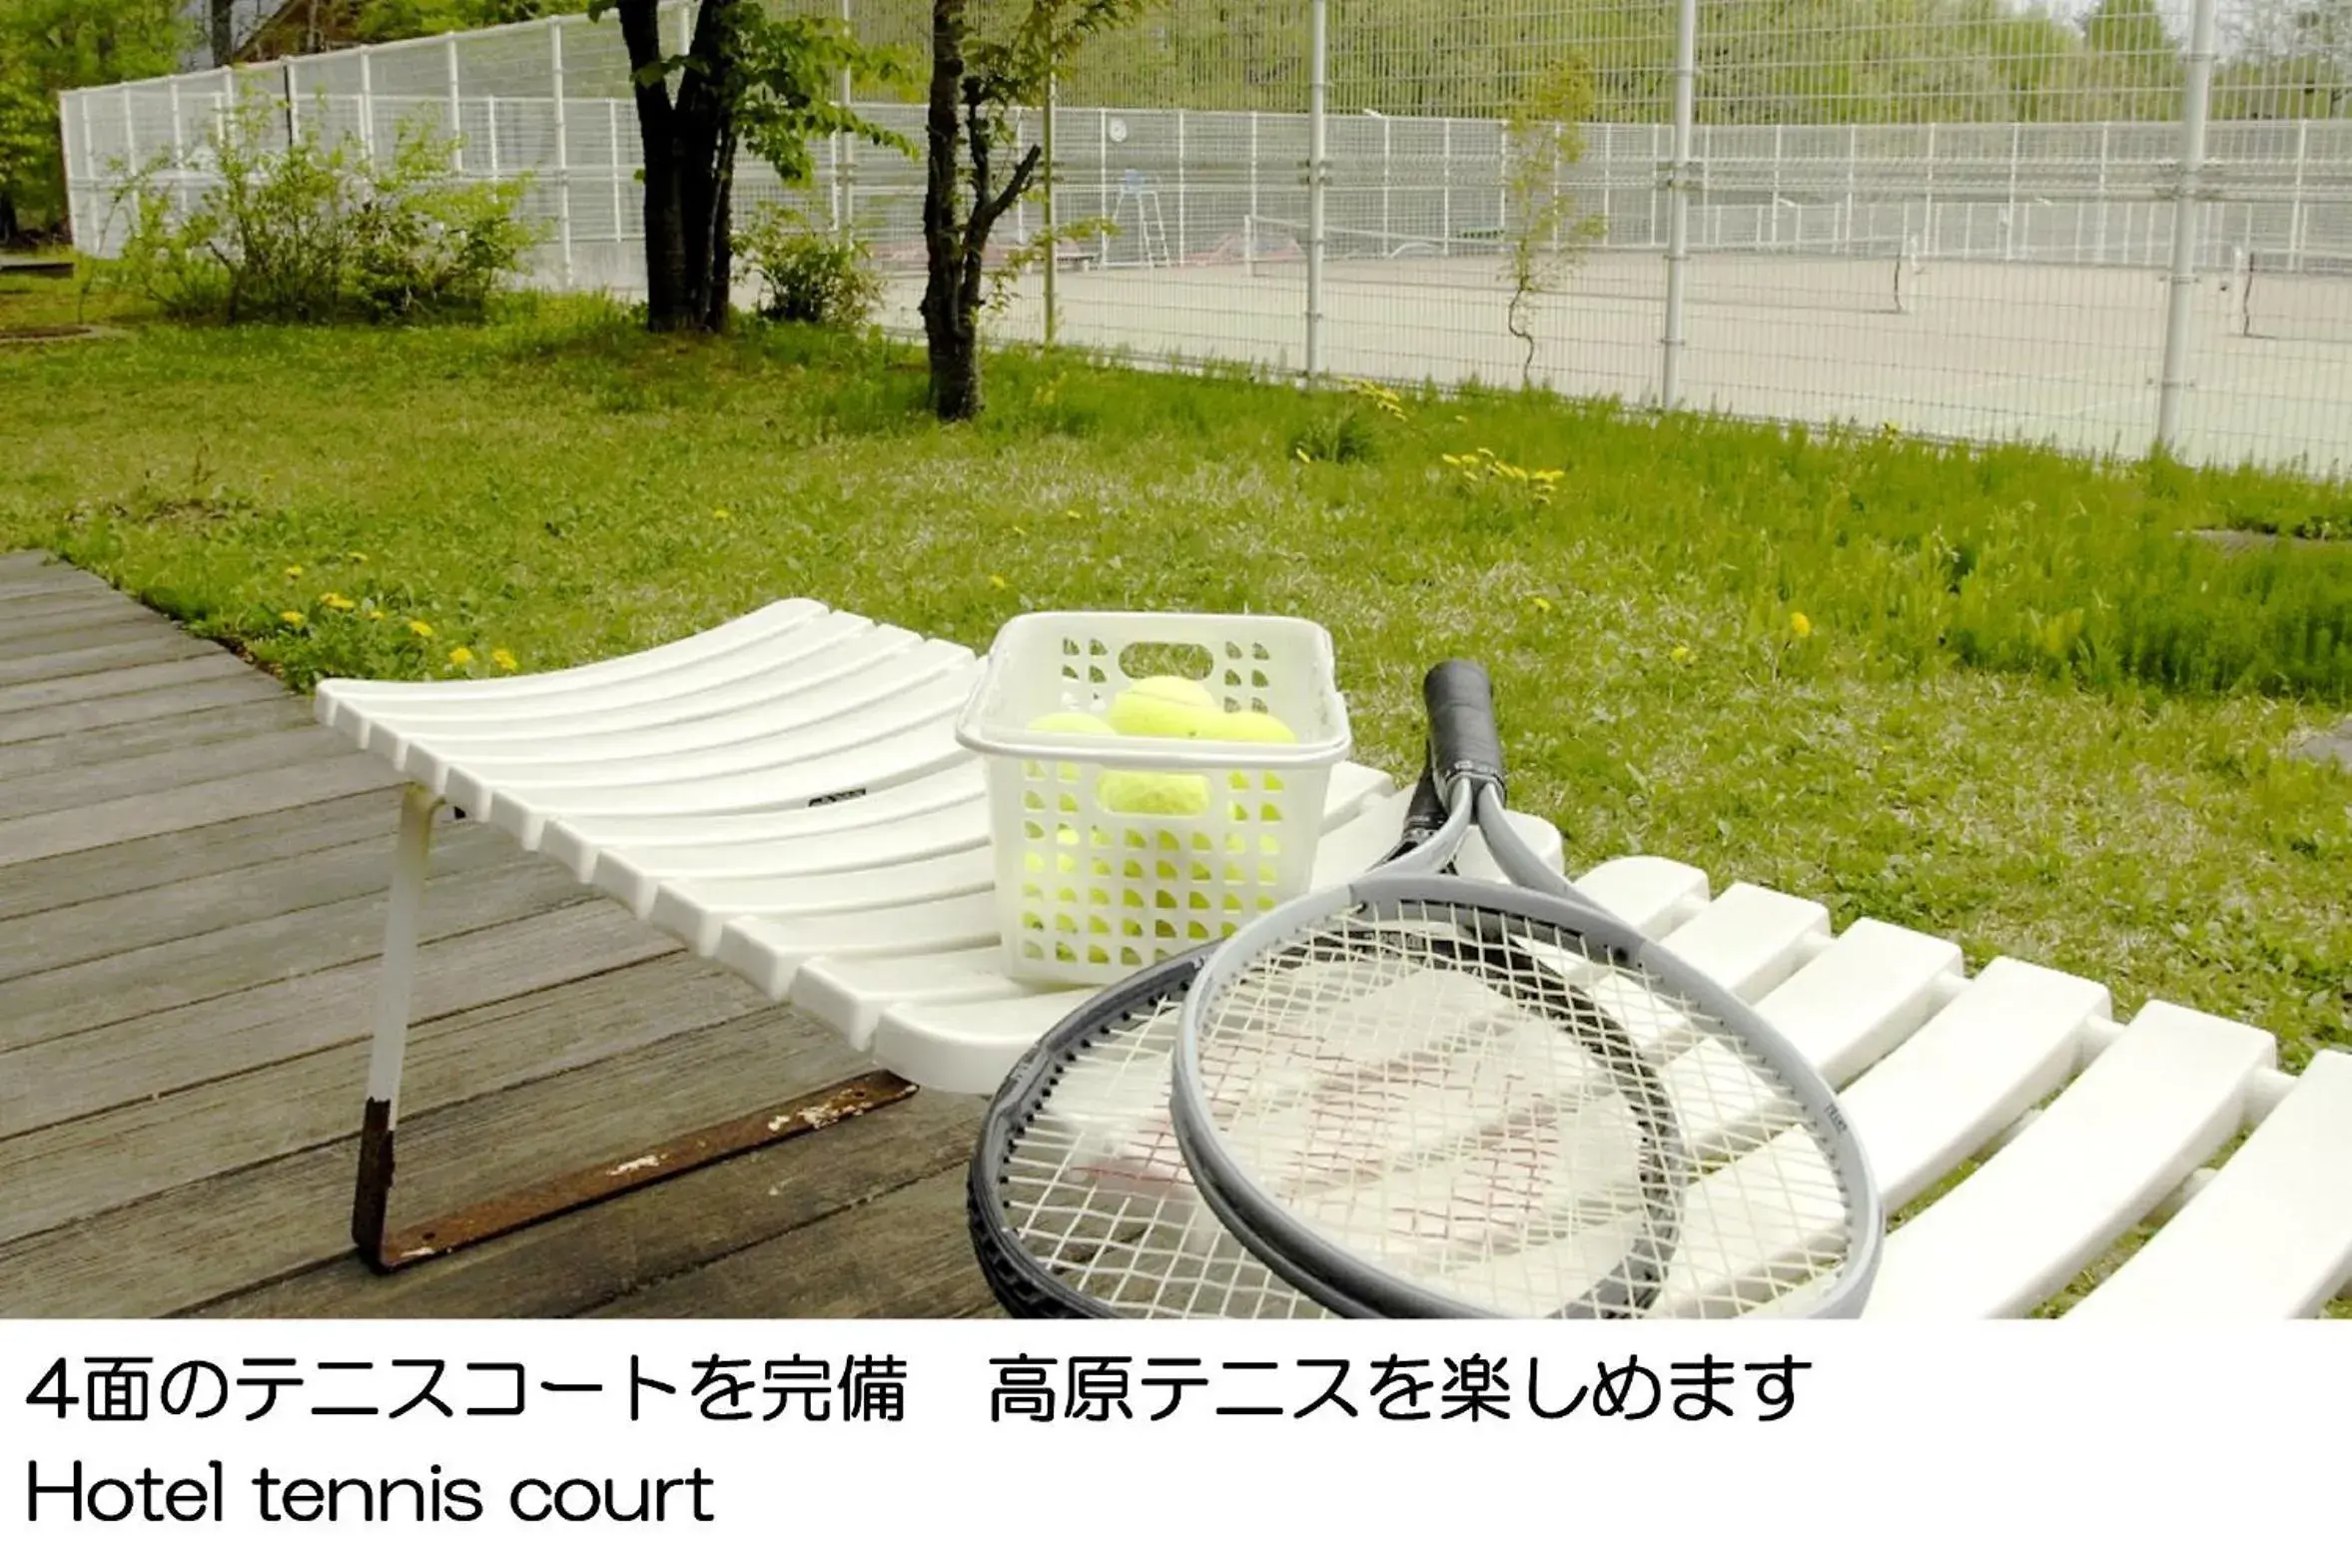 Tennis court in Karuizawakurabu Hotel 1130 Hewitt Resort